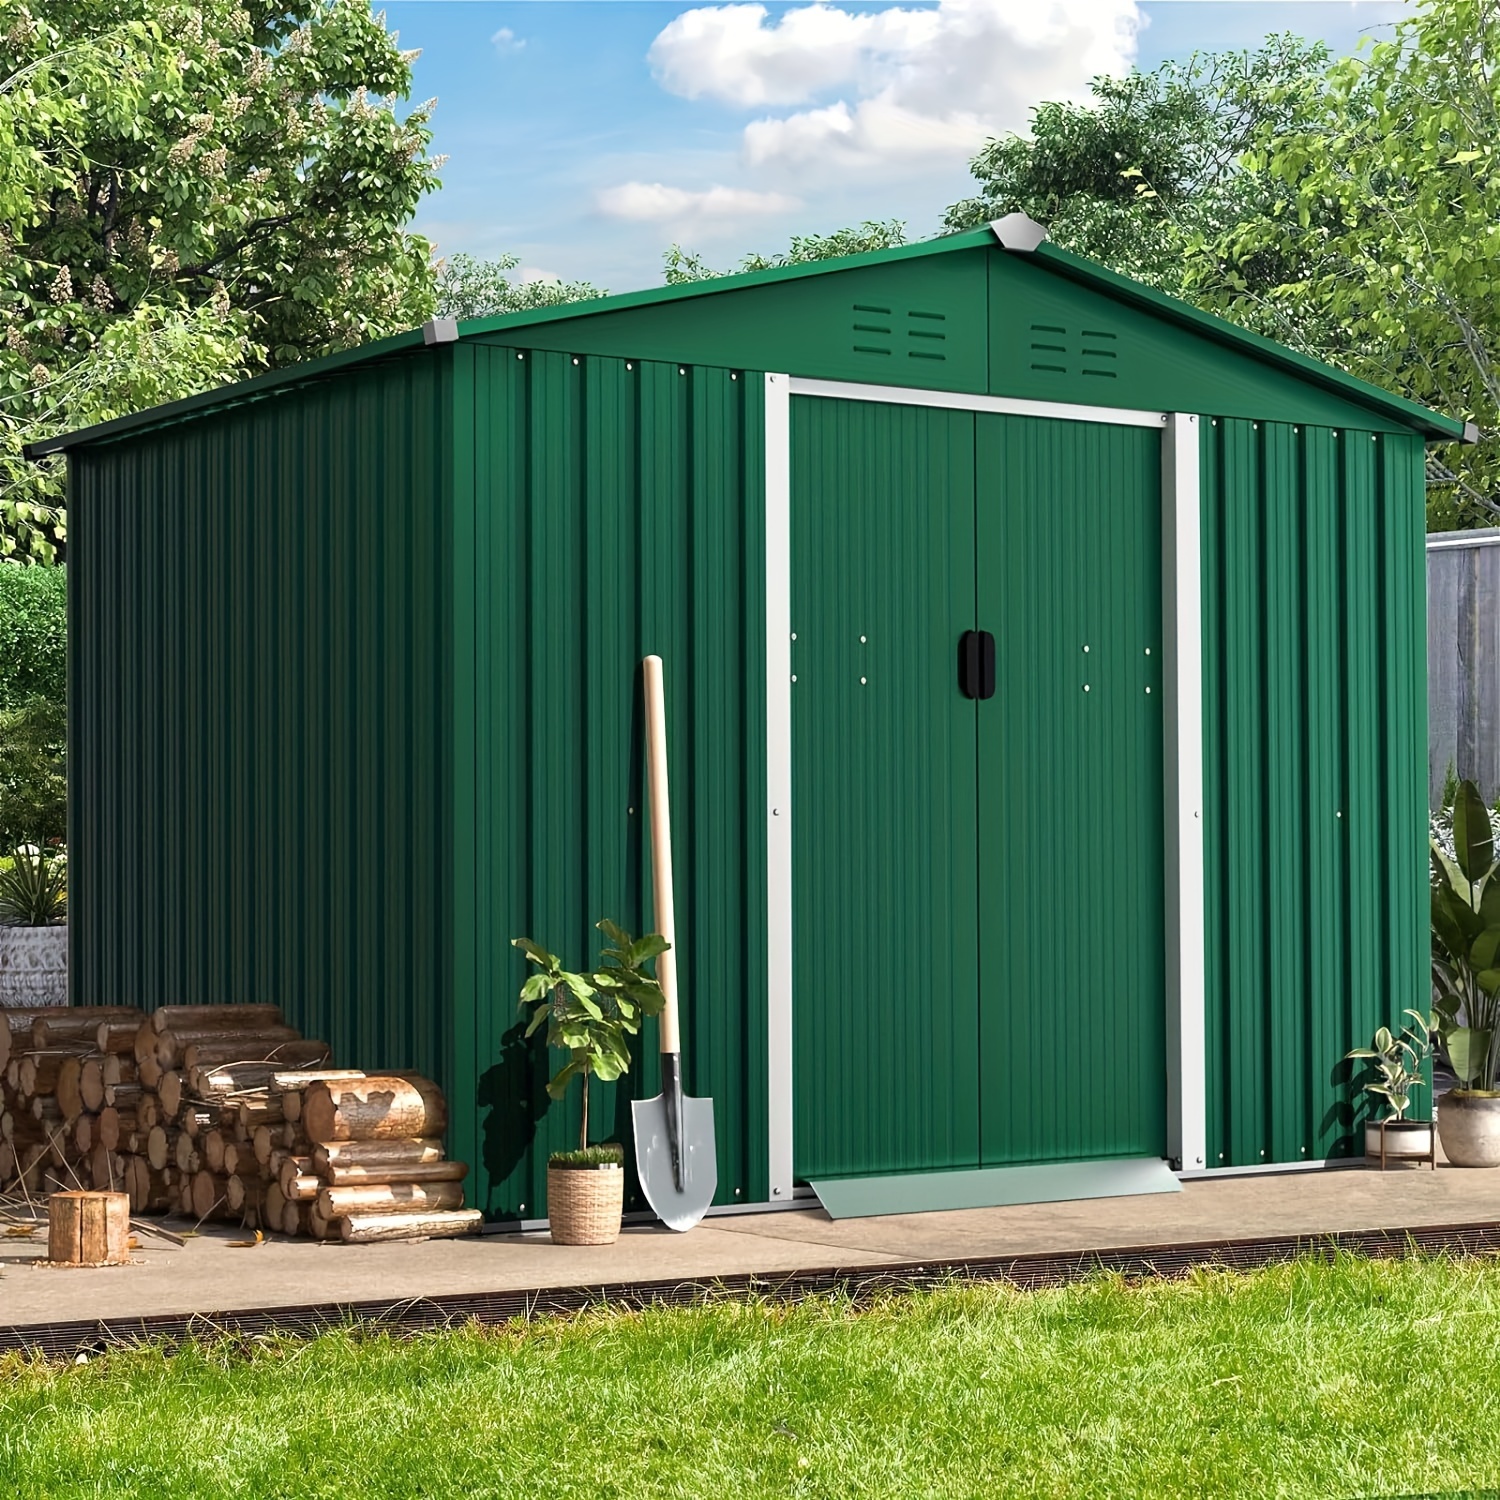 

8x6 Ft Outdoor Garden Storage Storage Tool With Sliding Door For Lawn Equipment Garden Backyard-green